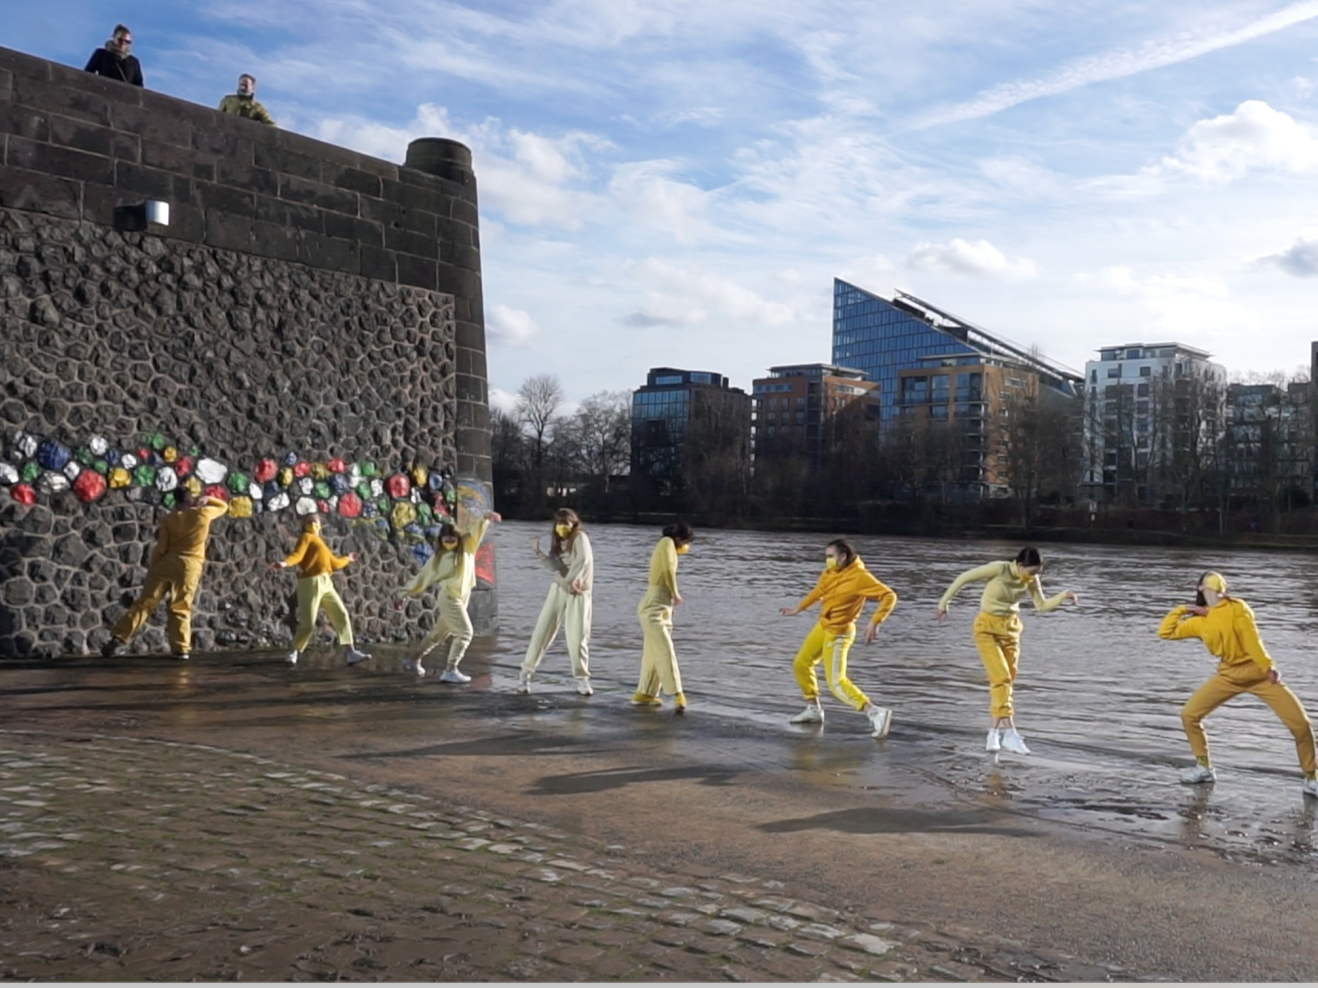 8 tanzende Personen in gelber Kleidung am Mainufer in Frankfurt